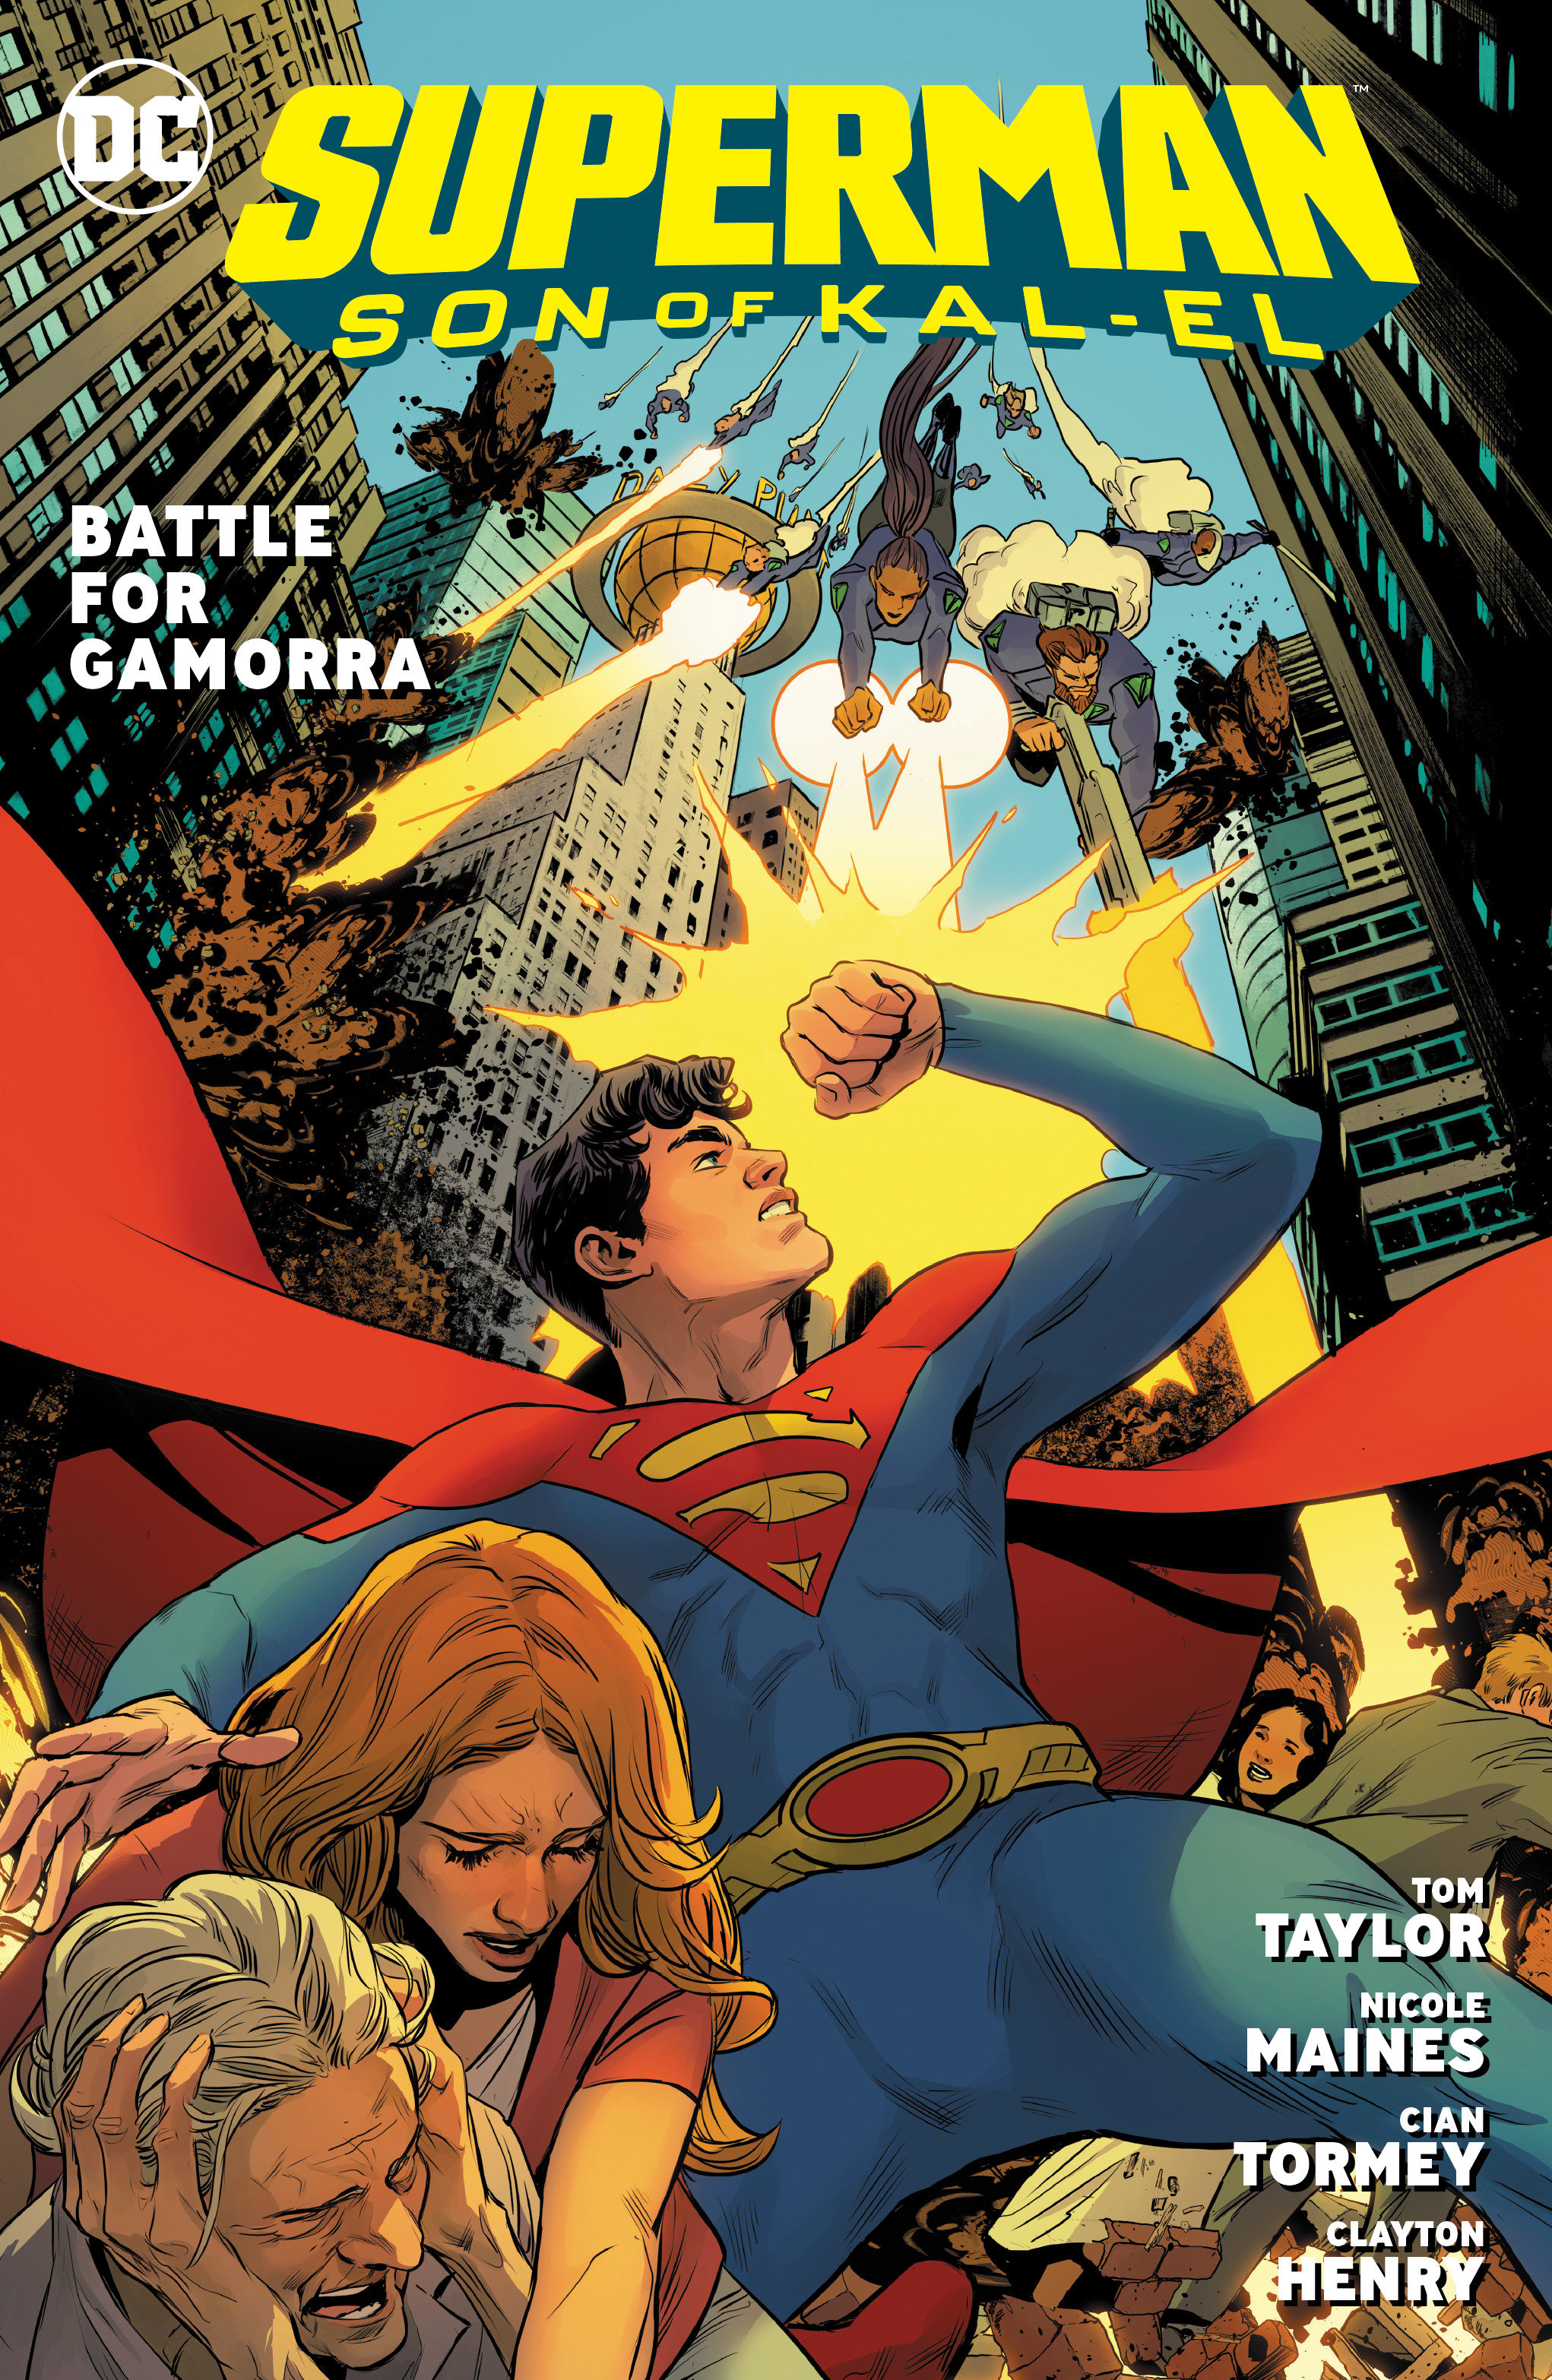 Superman Son of Kal-El Graphic Novel Volume 3 Battle for Gamorra